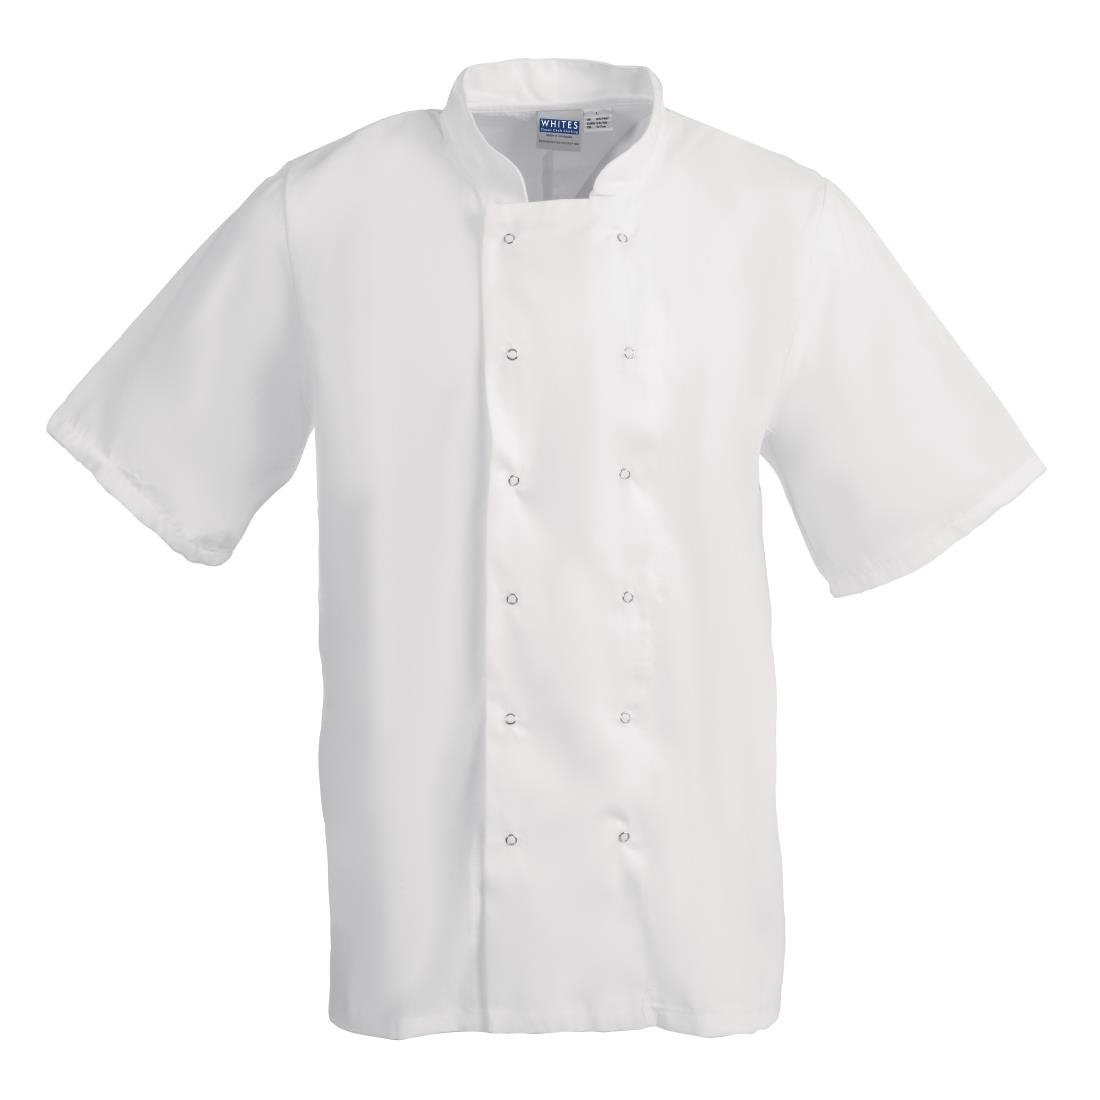 B250-S Whites Boston Unisex Short Sleeve Chefs Jacket White S JD Catering Equipment Solutions Ltd